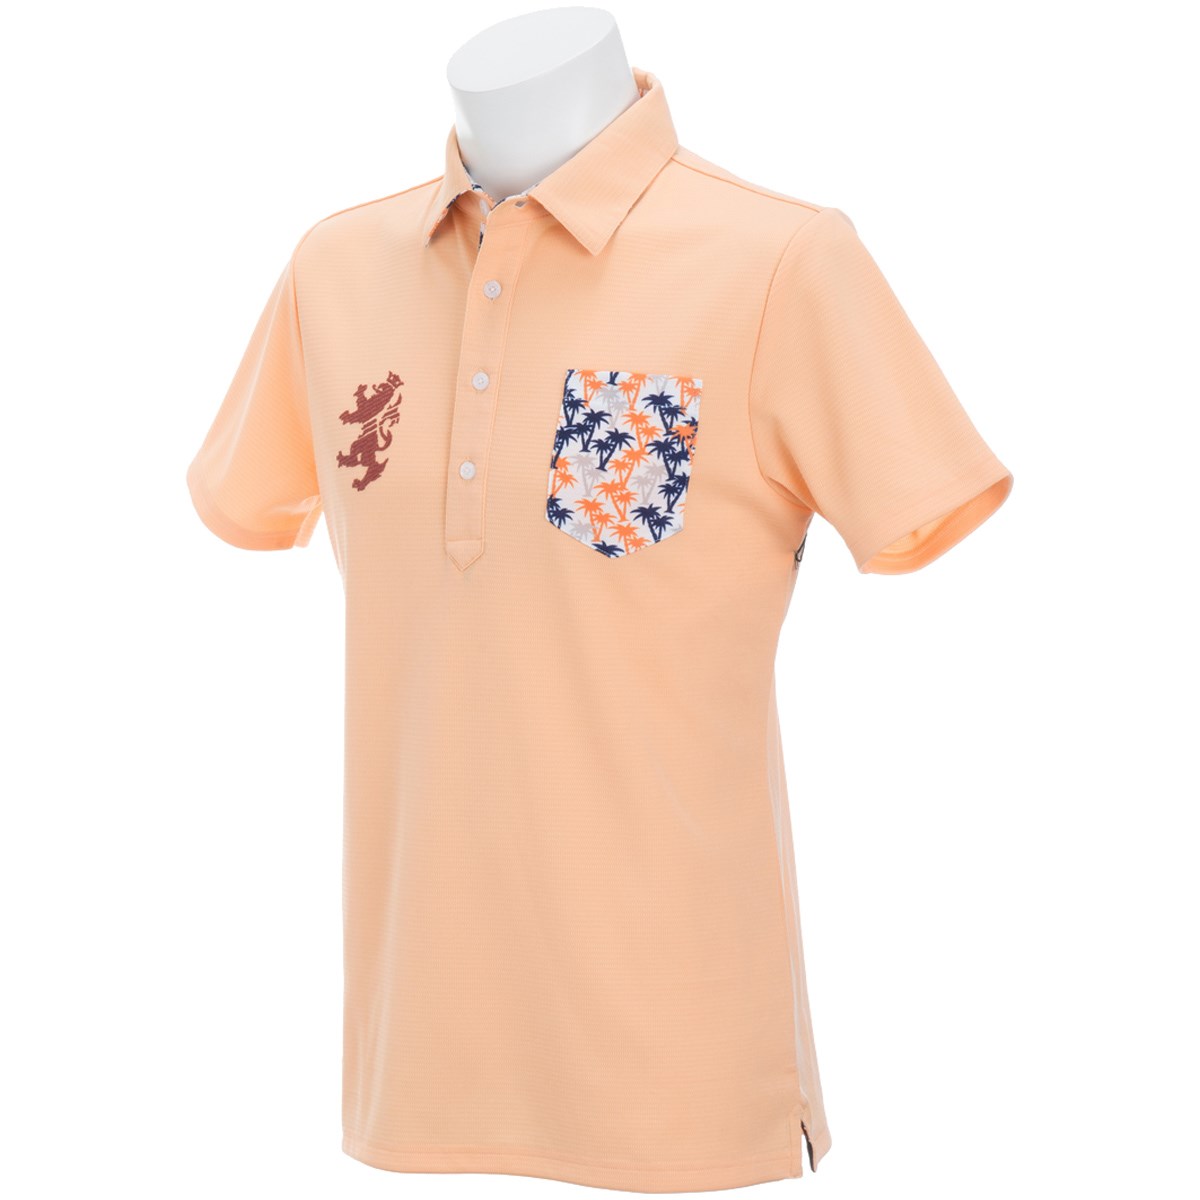  [アウトレット] [在庫限りのお買い得商品] アドミラル パーツ マイクロヤシの木 半袖ポロシャツ ゴルフウェア